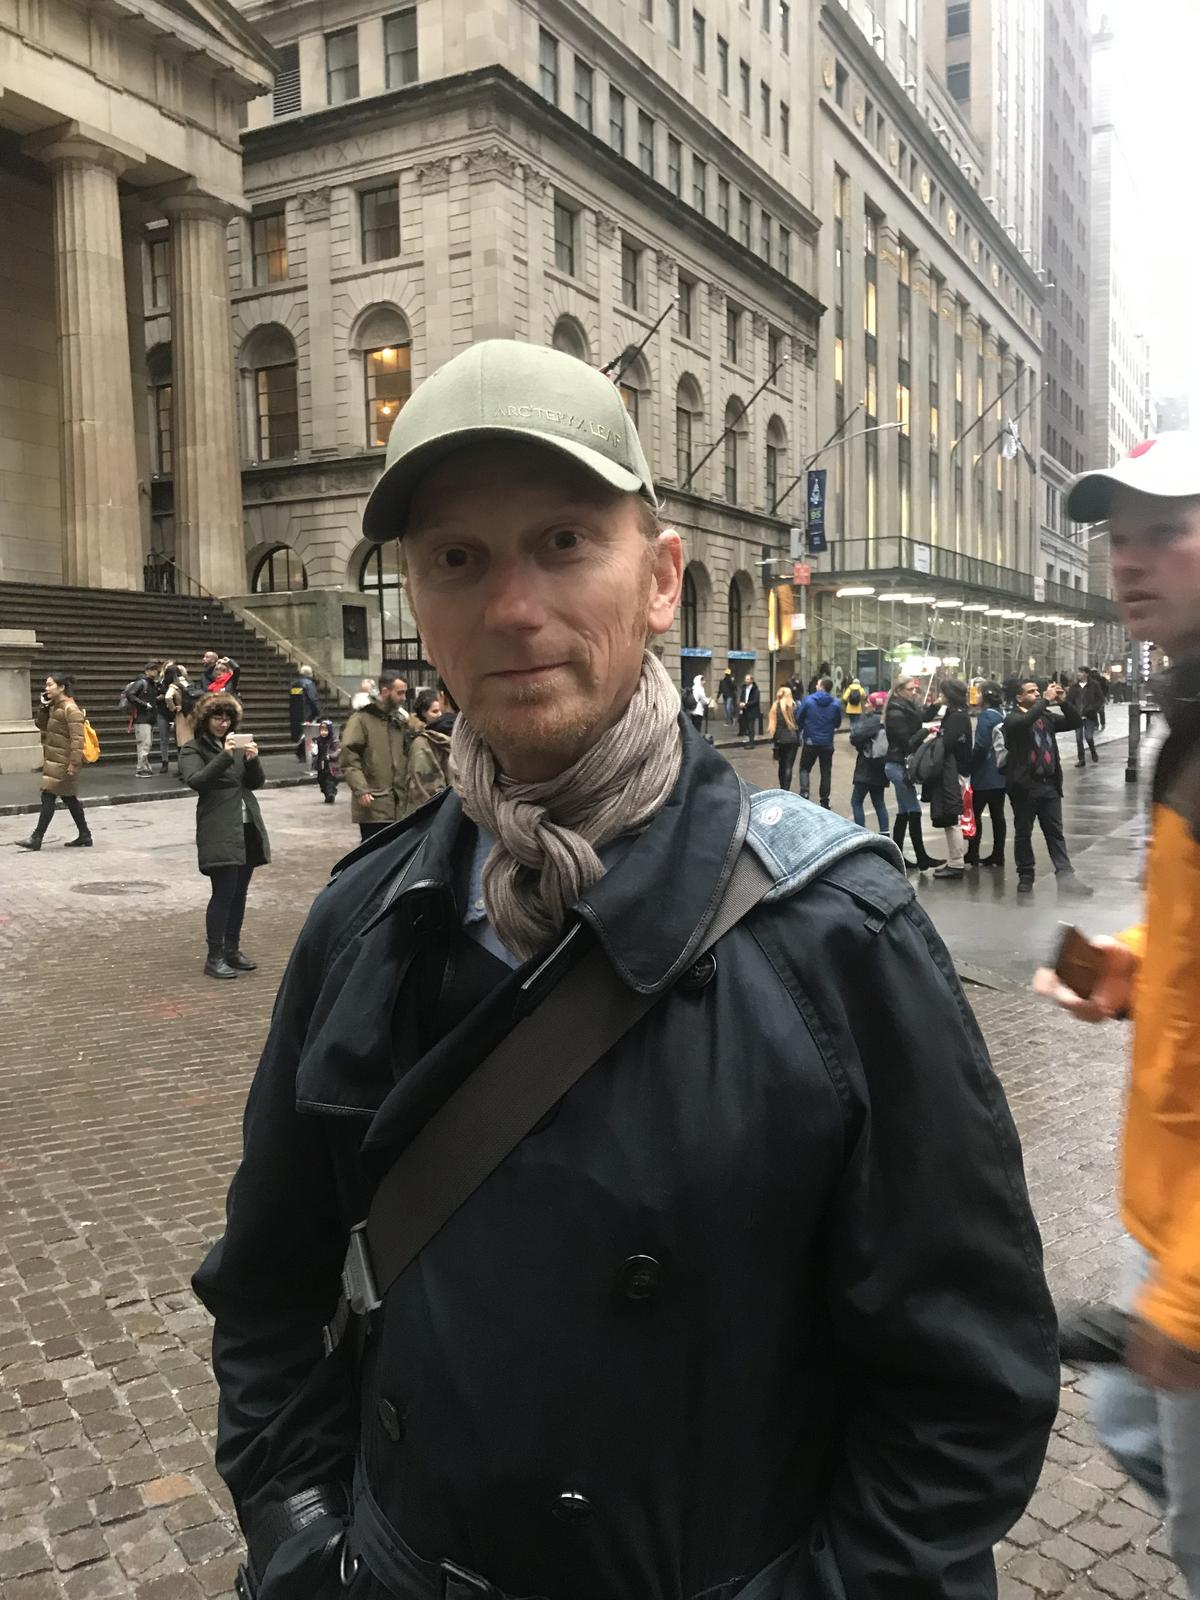 Nick Hritz in New York on Dec. 21, 2018. (Stuart Liess/The Epoch Times)